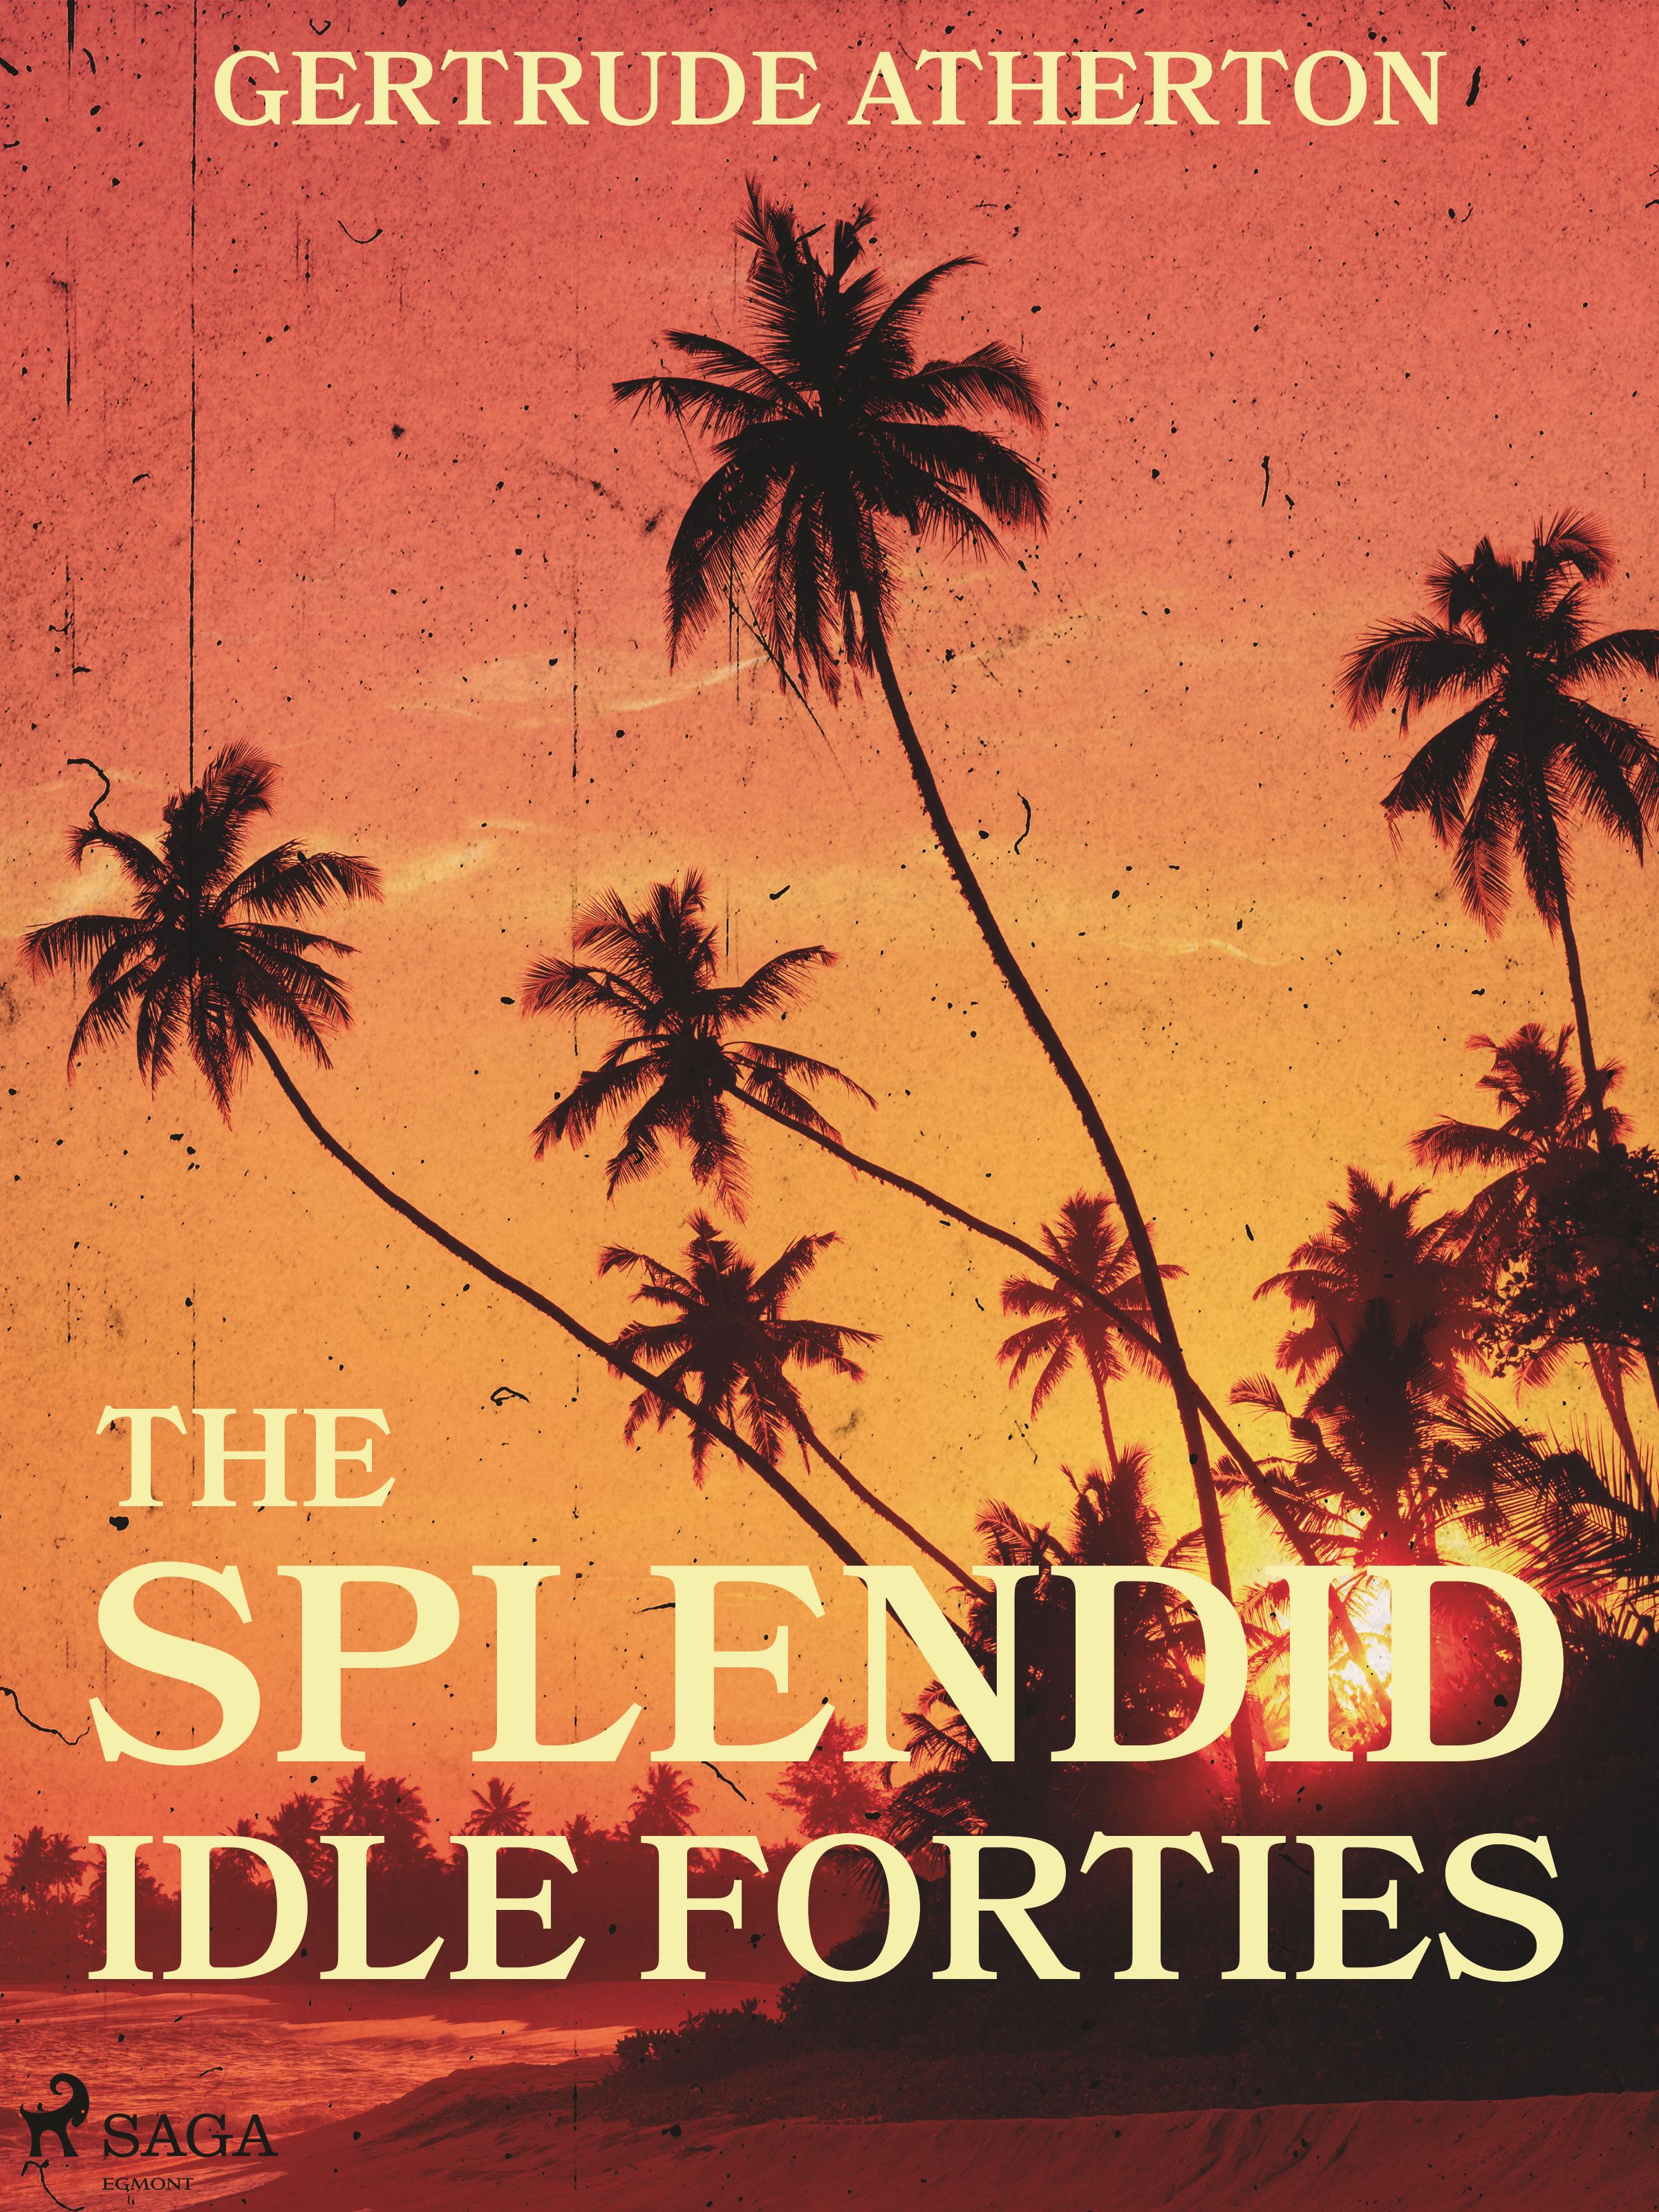 The Splendid, Idle Forties, e-bok av Gertrude Atherton